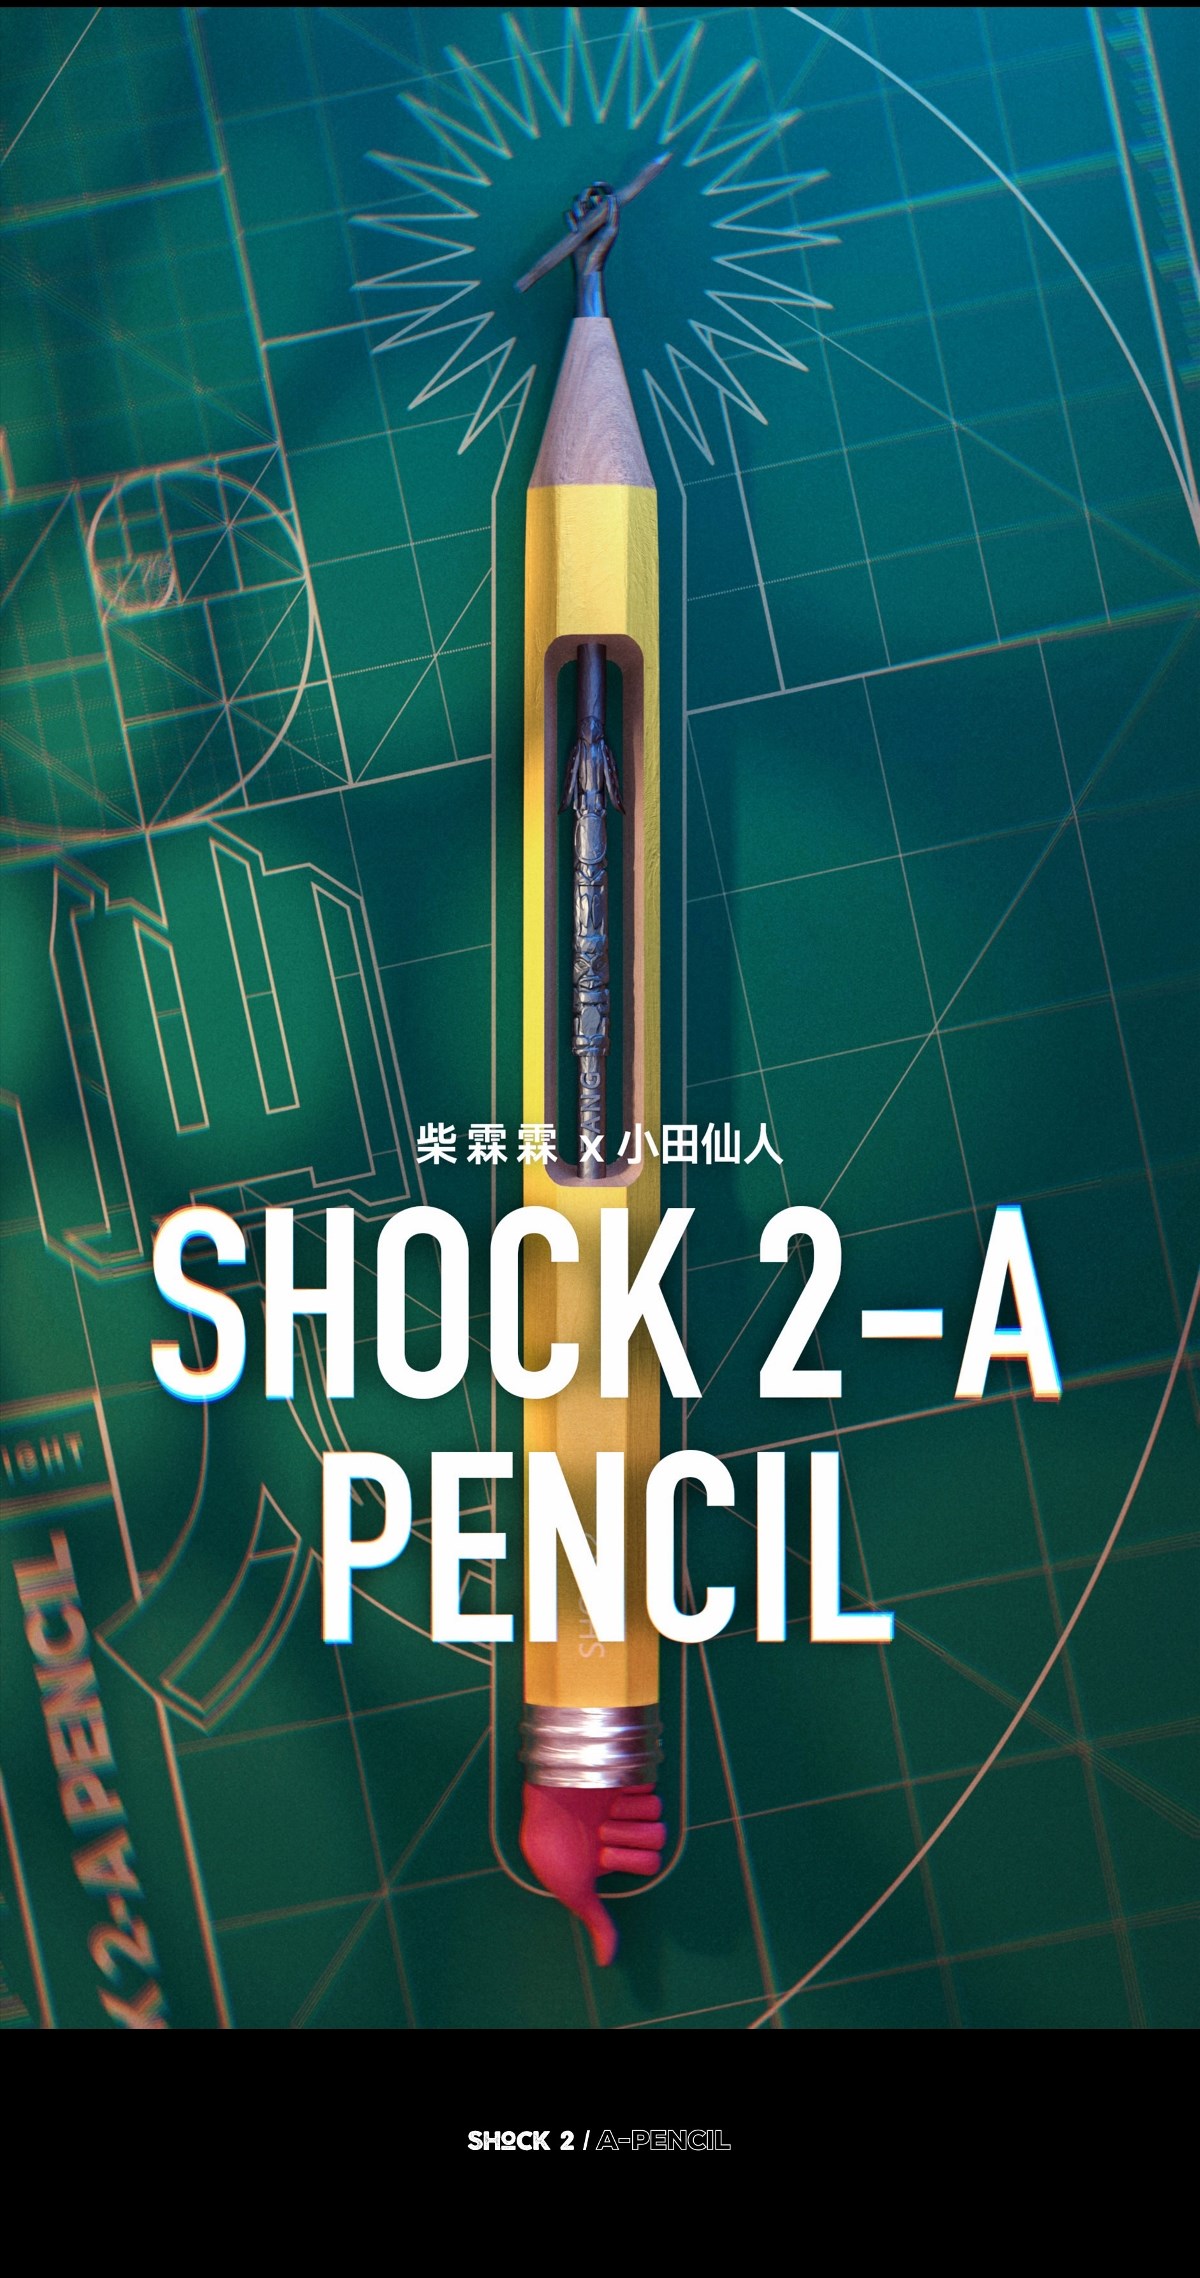 柴霖霖2019年末特辑-SHOCK2-A PENCIL主题创作盛宴